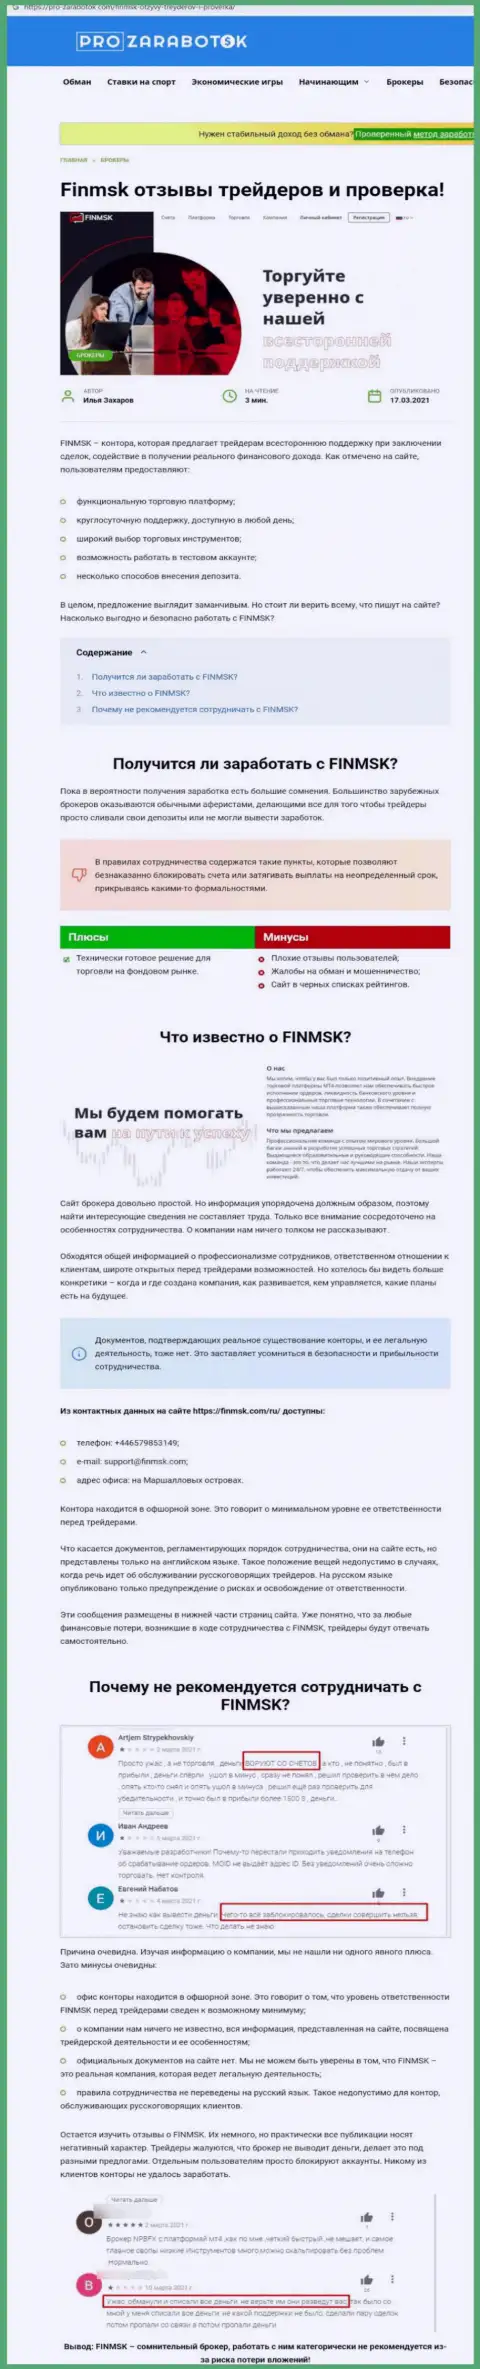 Чем заканчивается совместное взаимодействие с организацией FinMSK ??? Обзорная публикация о интернет-мошеннике